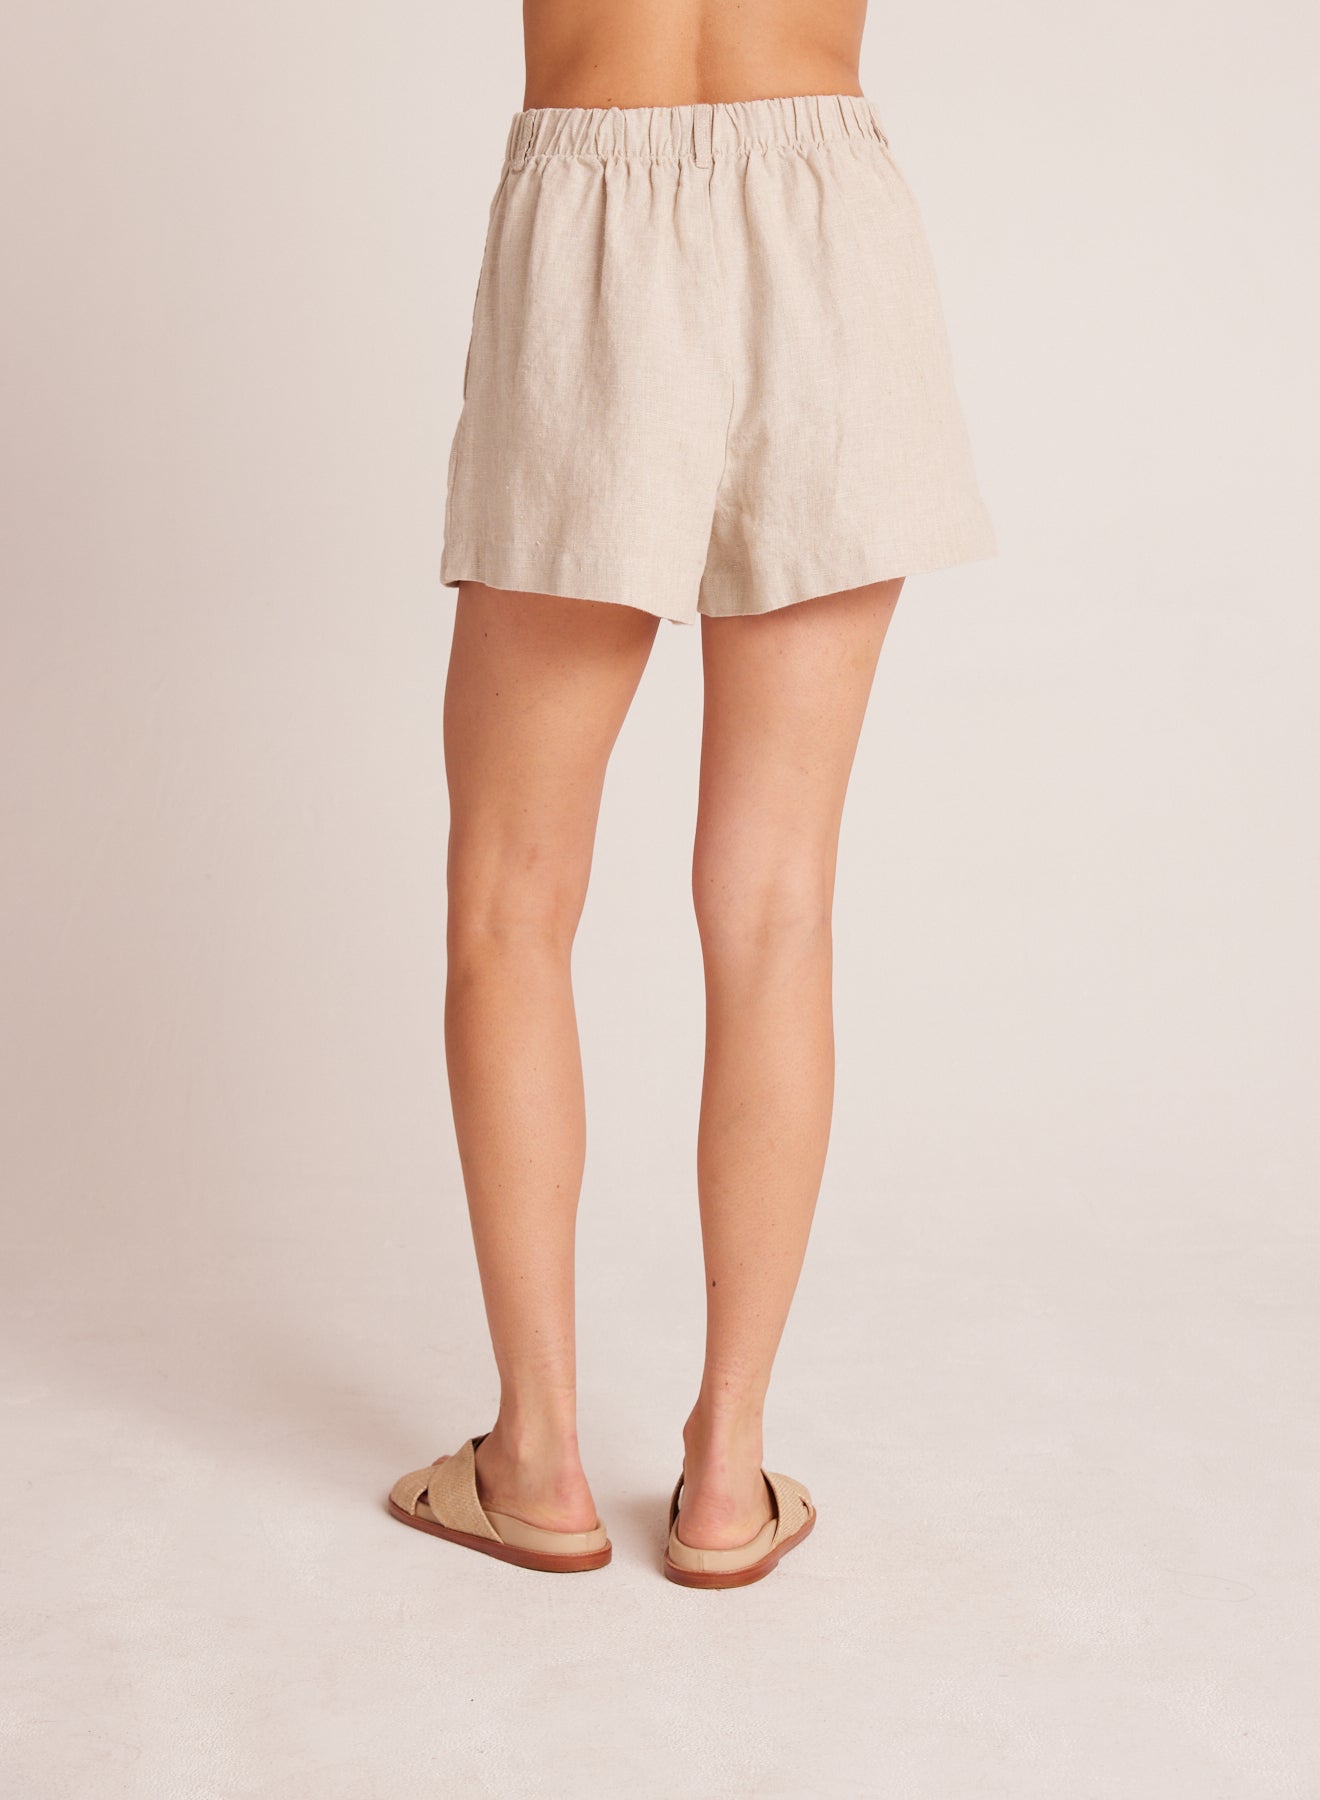 Bella DahlPleat Front Trouser Short - Linen SandBottoms